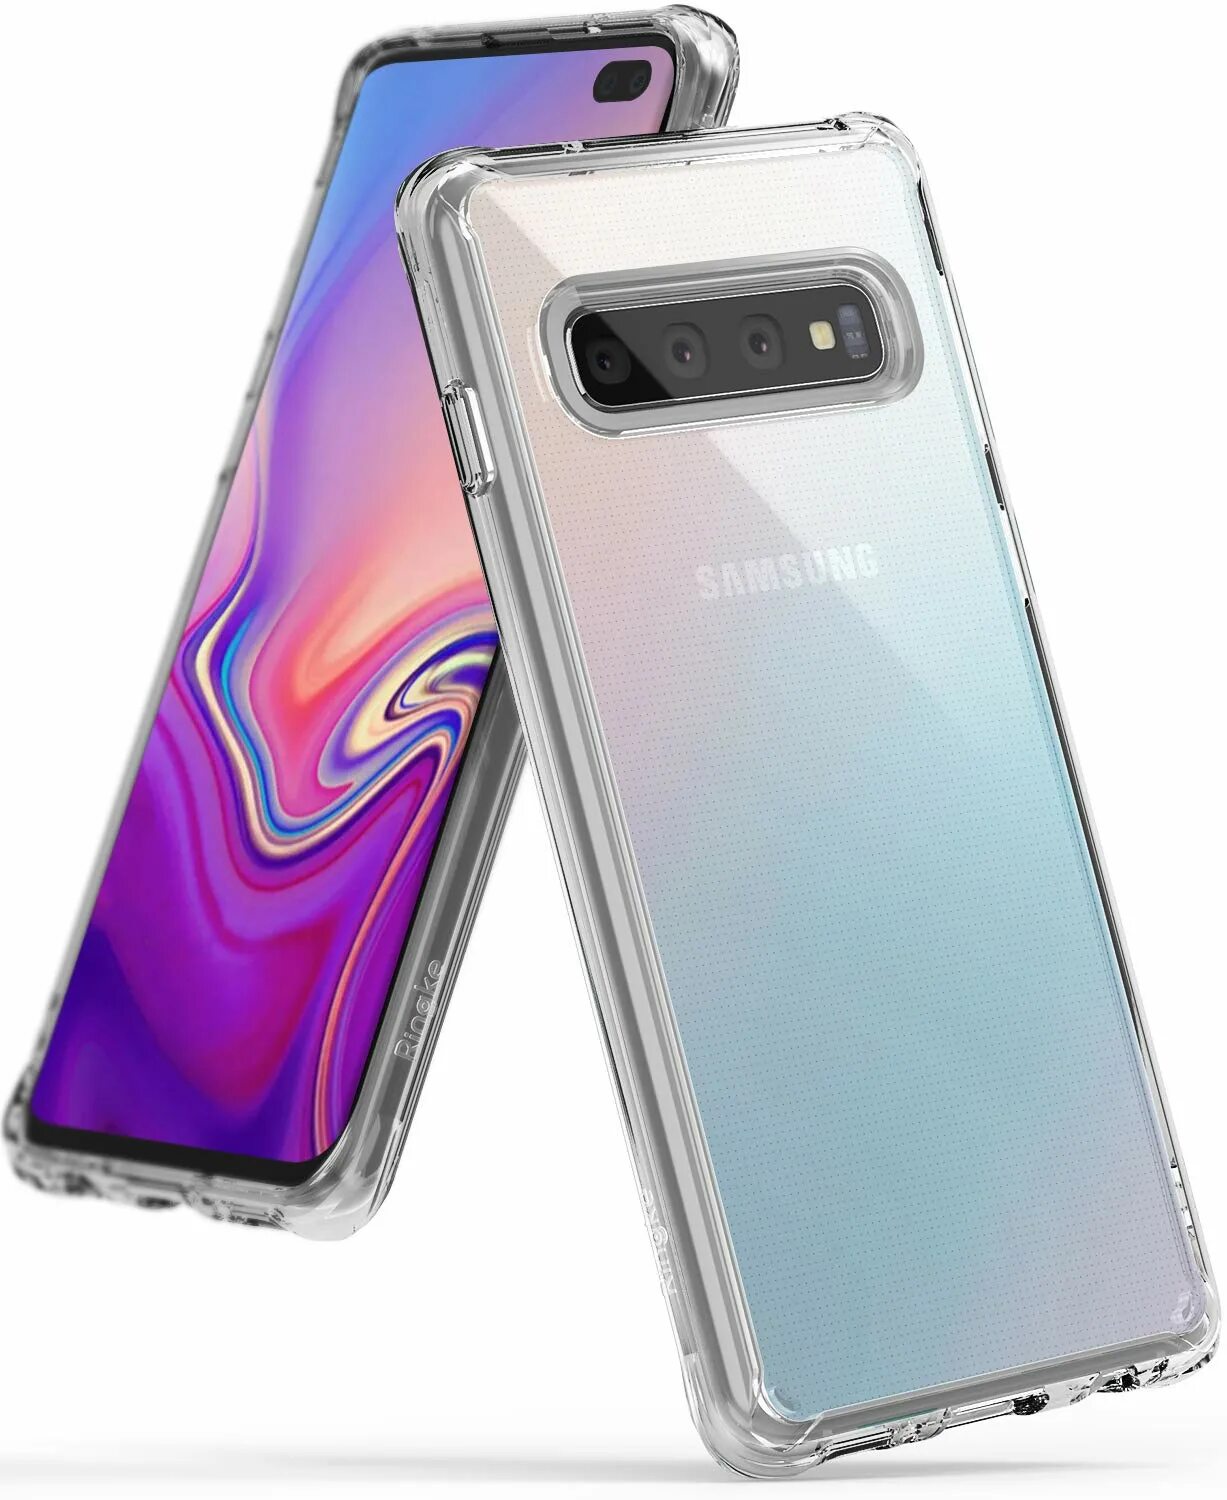 Samsung s10 Plus Case. Samsung s10 Plus. Samsung s10 Plus корпус. Samsung Galaxy s10 Plus Case Cover. Нереальный телефон